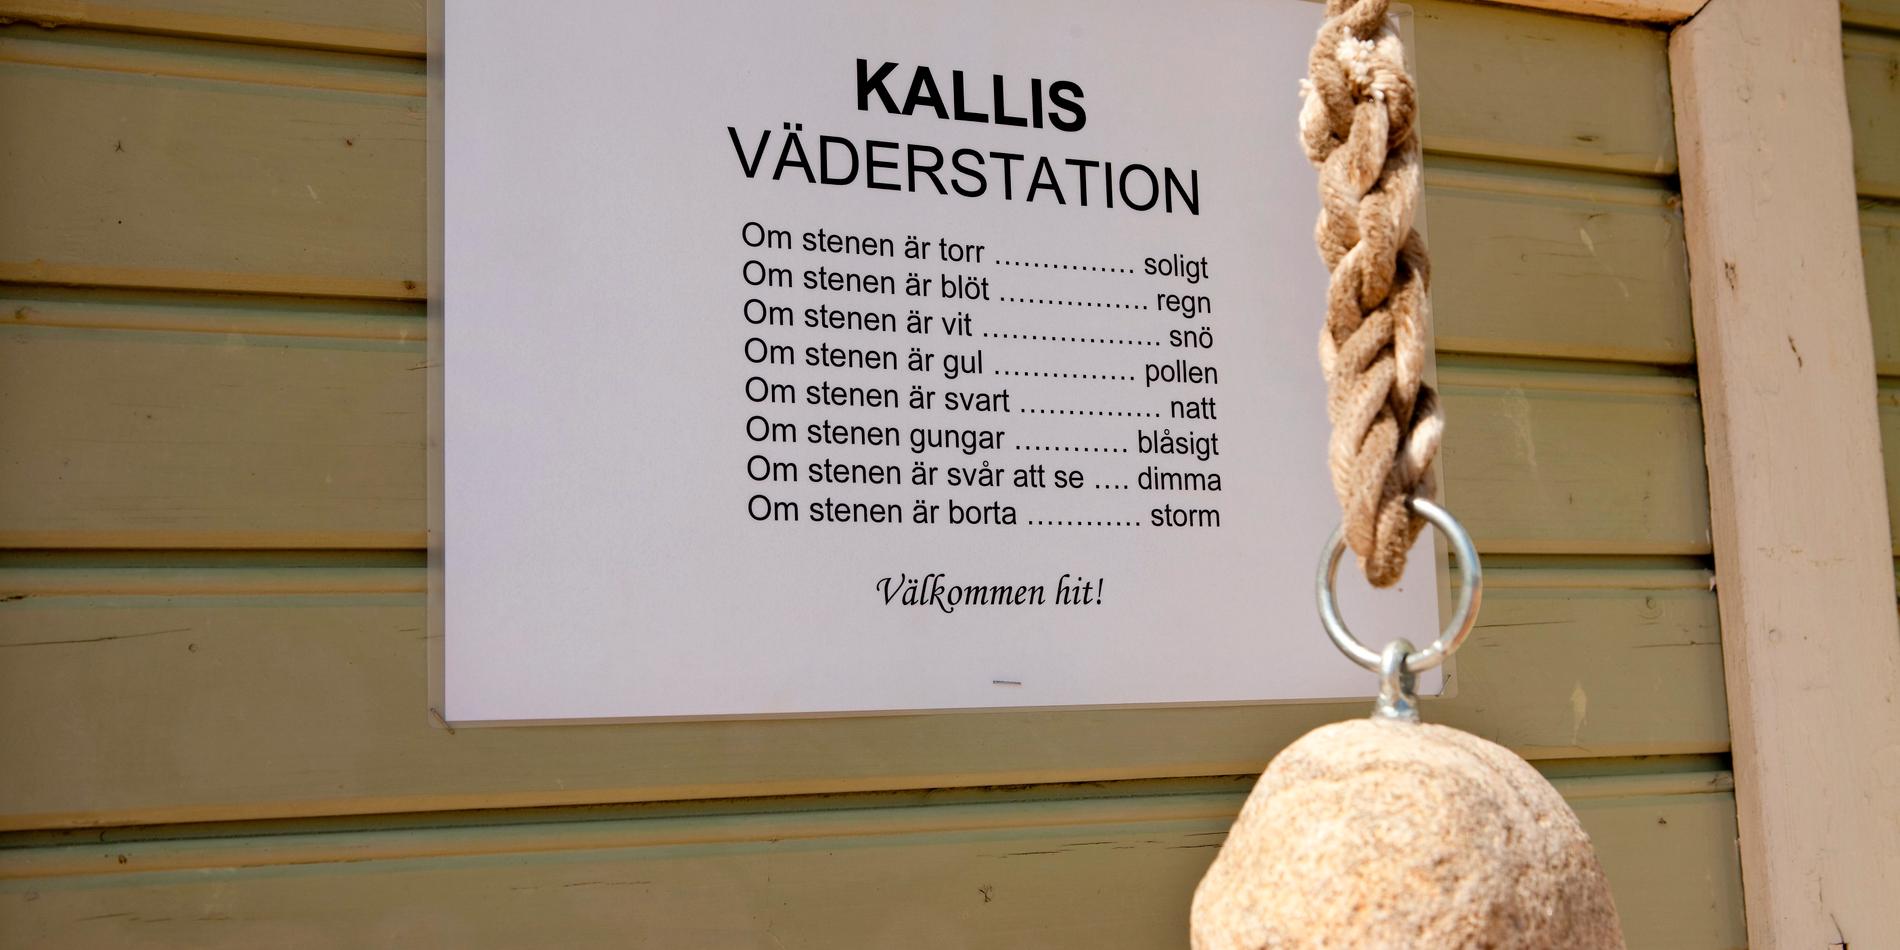 Kallbadhuset på Ribersborg är en klassisk och K-märkt inrättning som nyligen byggts om efter omfattande vattenskador och problem med duscharna. 